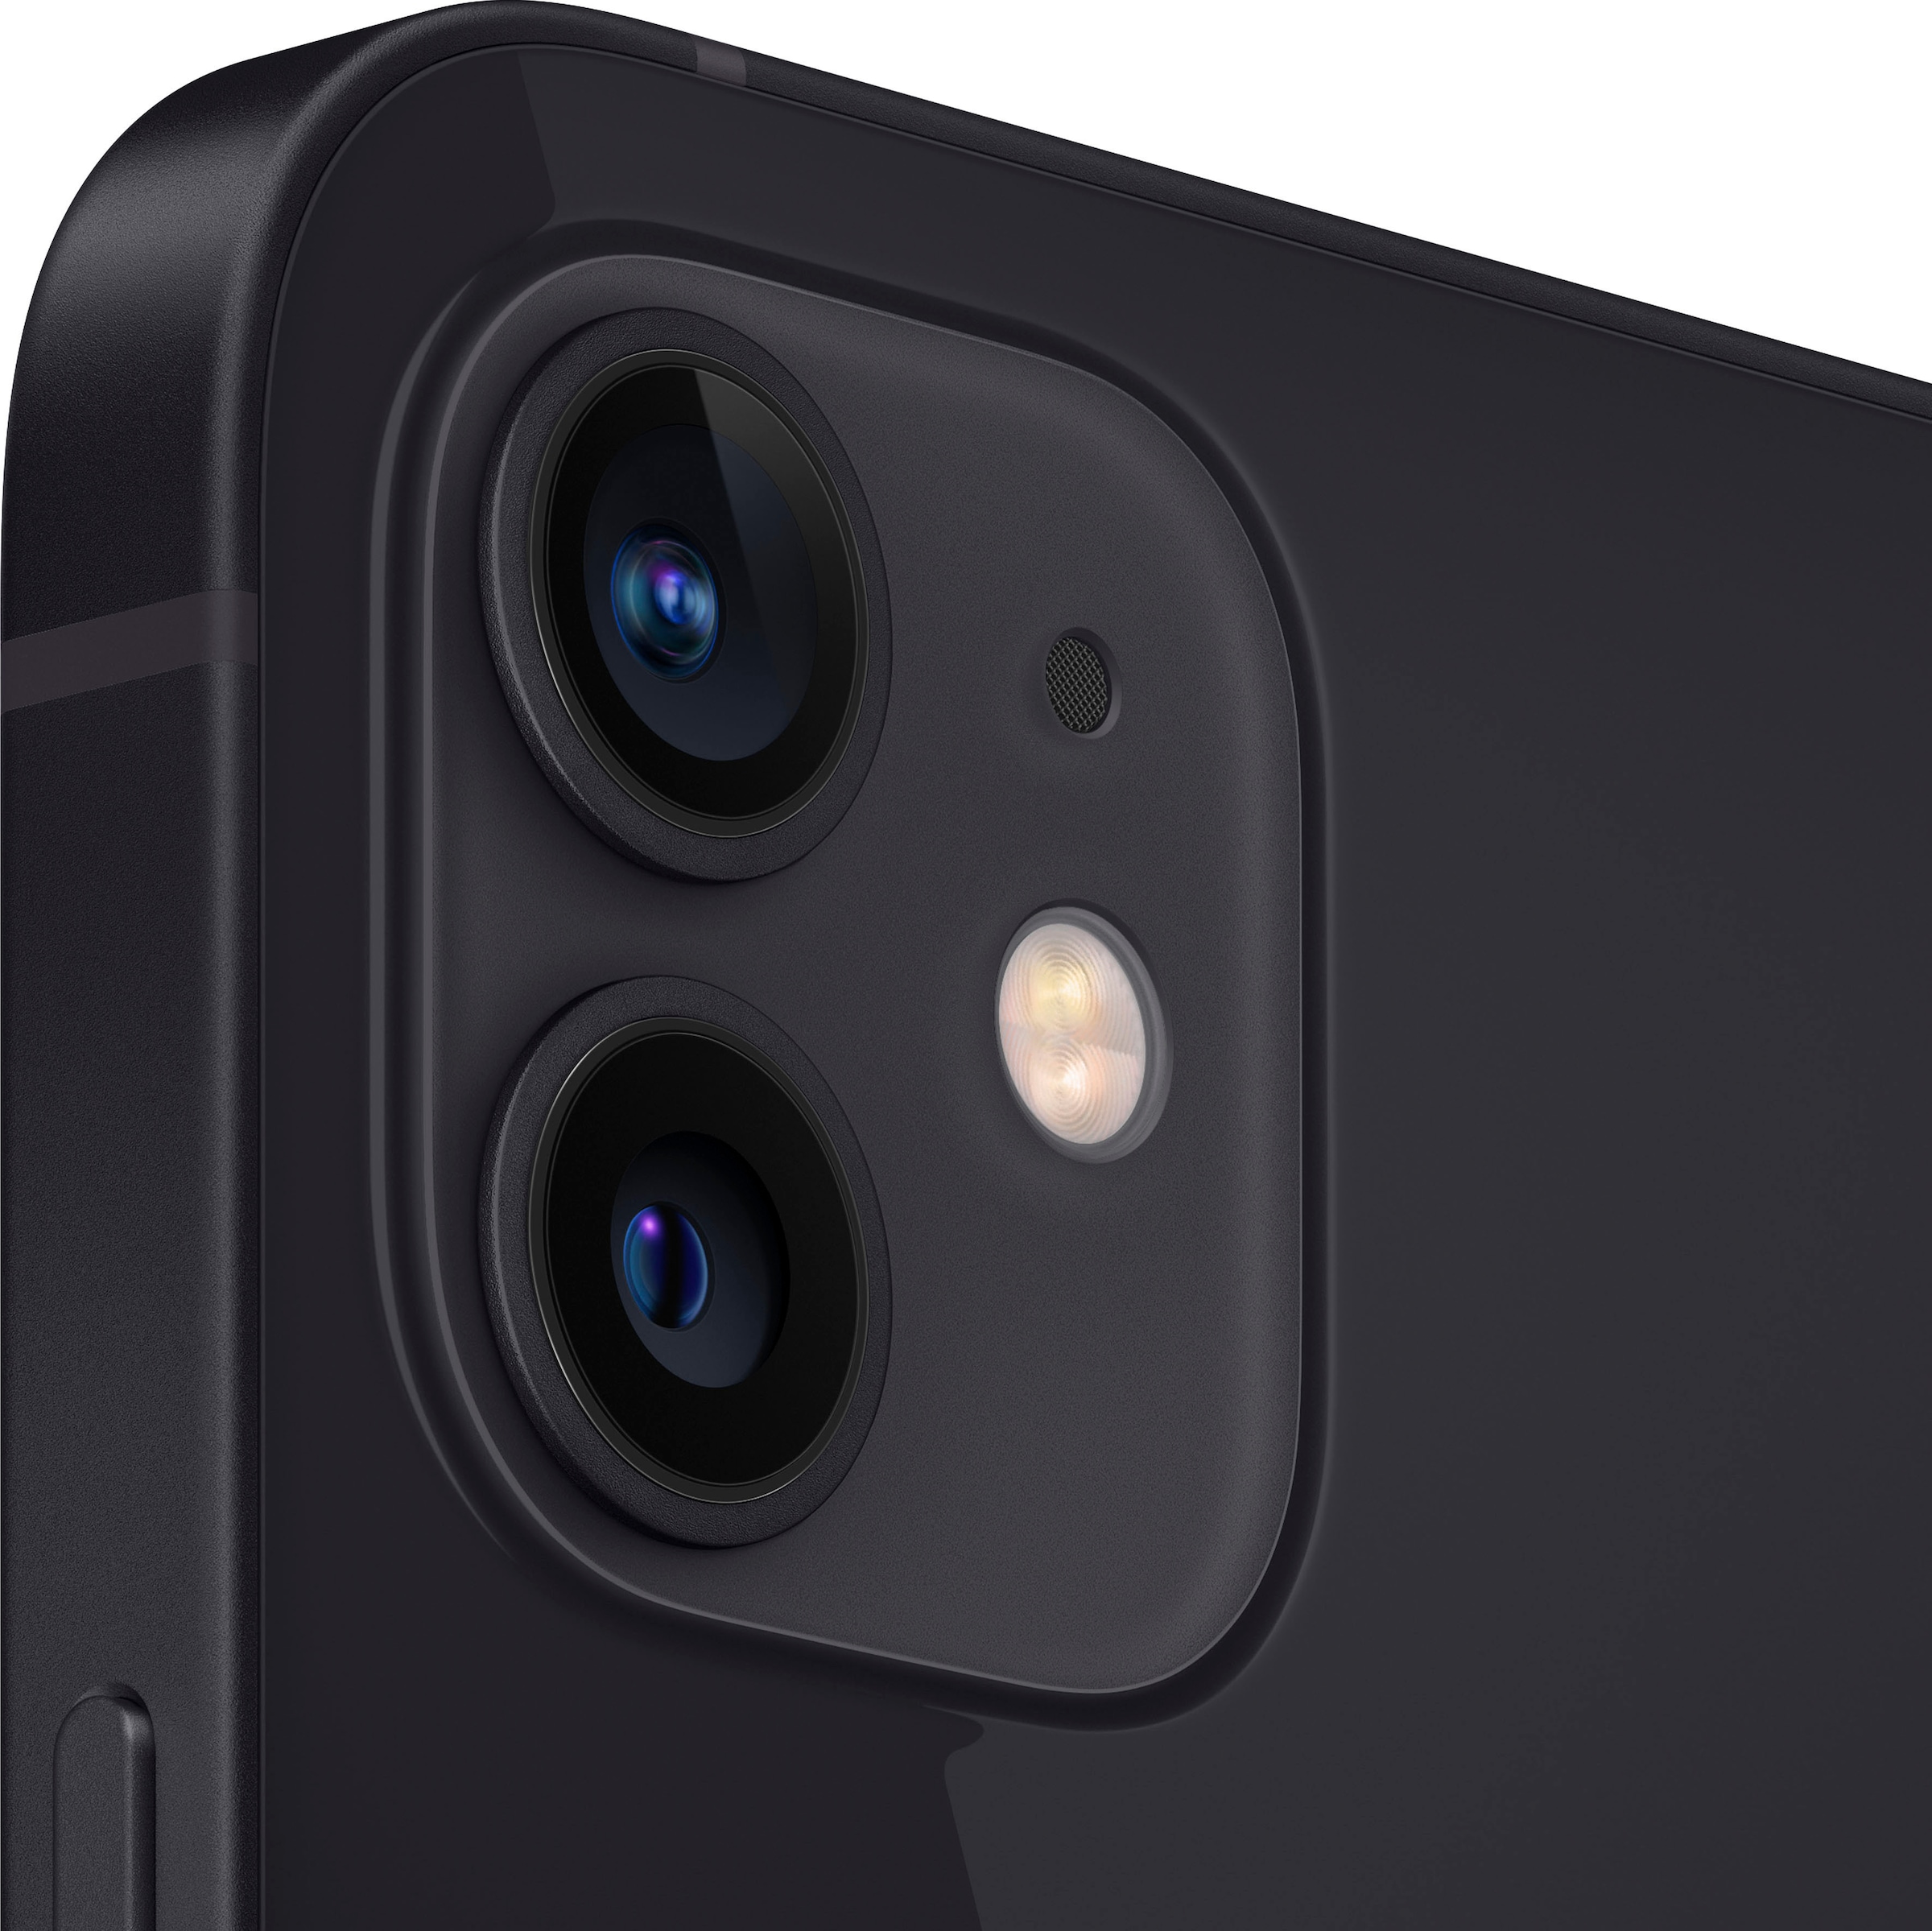 Apple Smartphone »iPhone 12 64GB«, schwarz, 15,5 cm/6,1 Zoll, 64 GB Speicherplatz, 12 MP Kamera, ohne Strom Adapter und Kopfhörer, kompatibel mit AirPods, Earpods